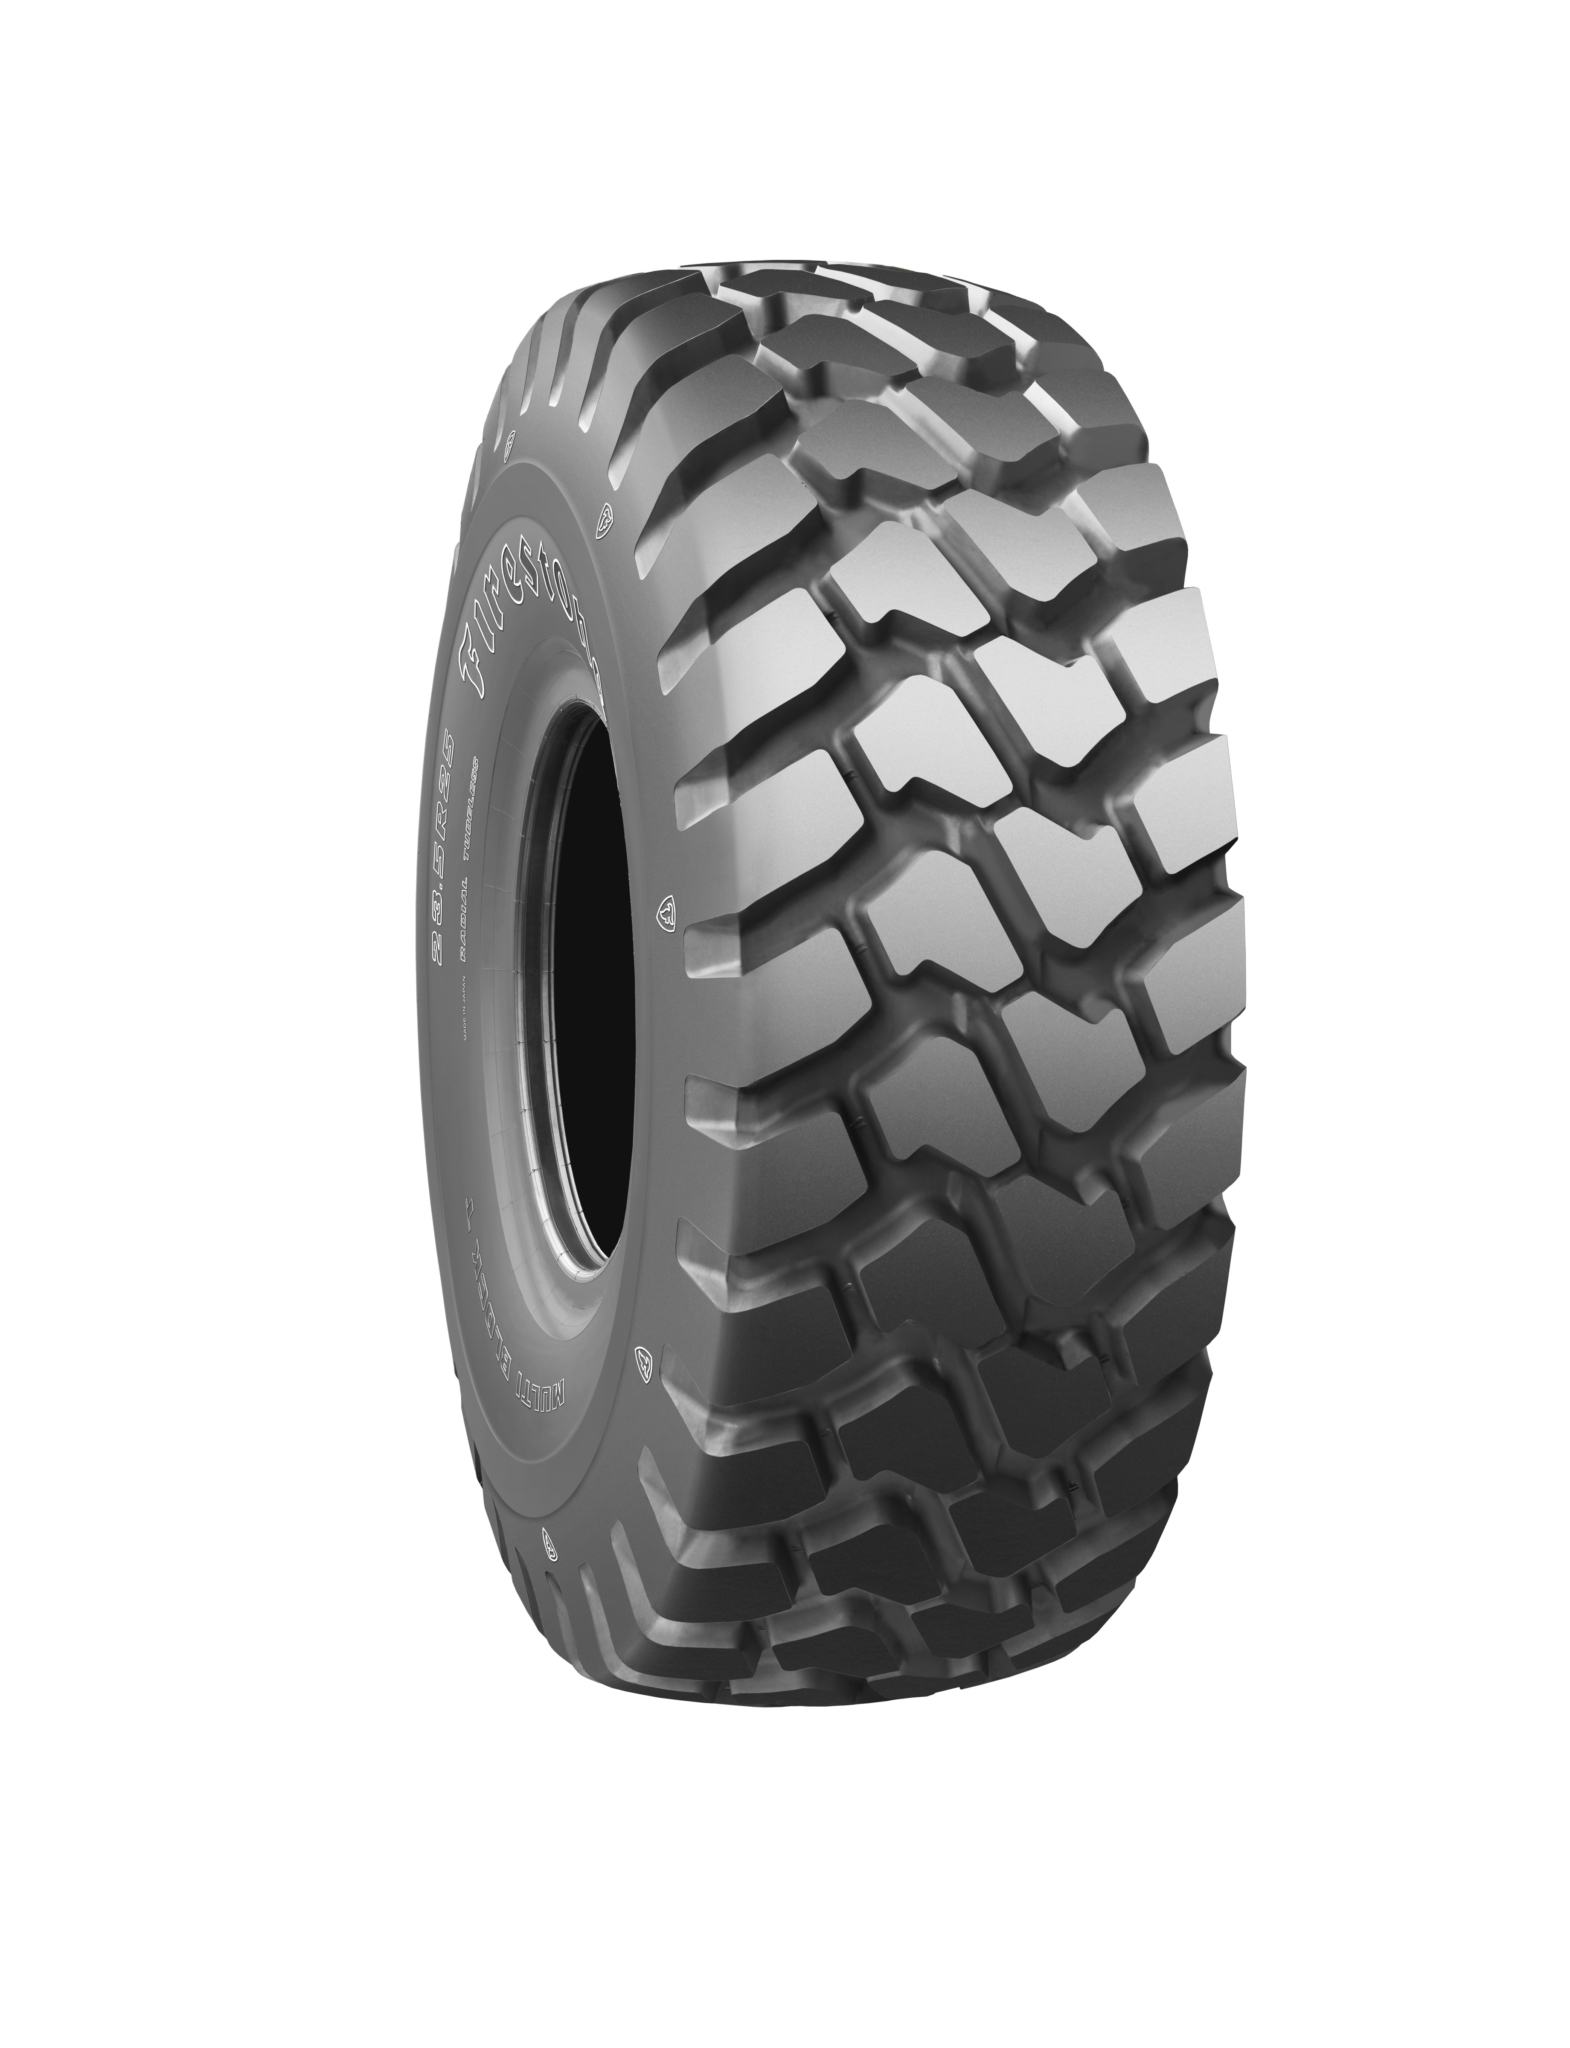 Firestone brand enters European OTR tyre market